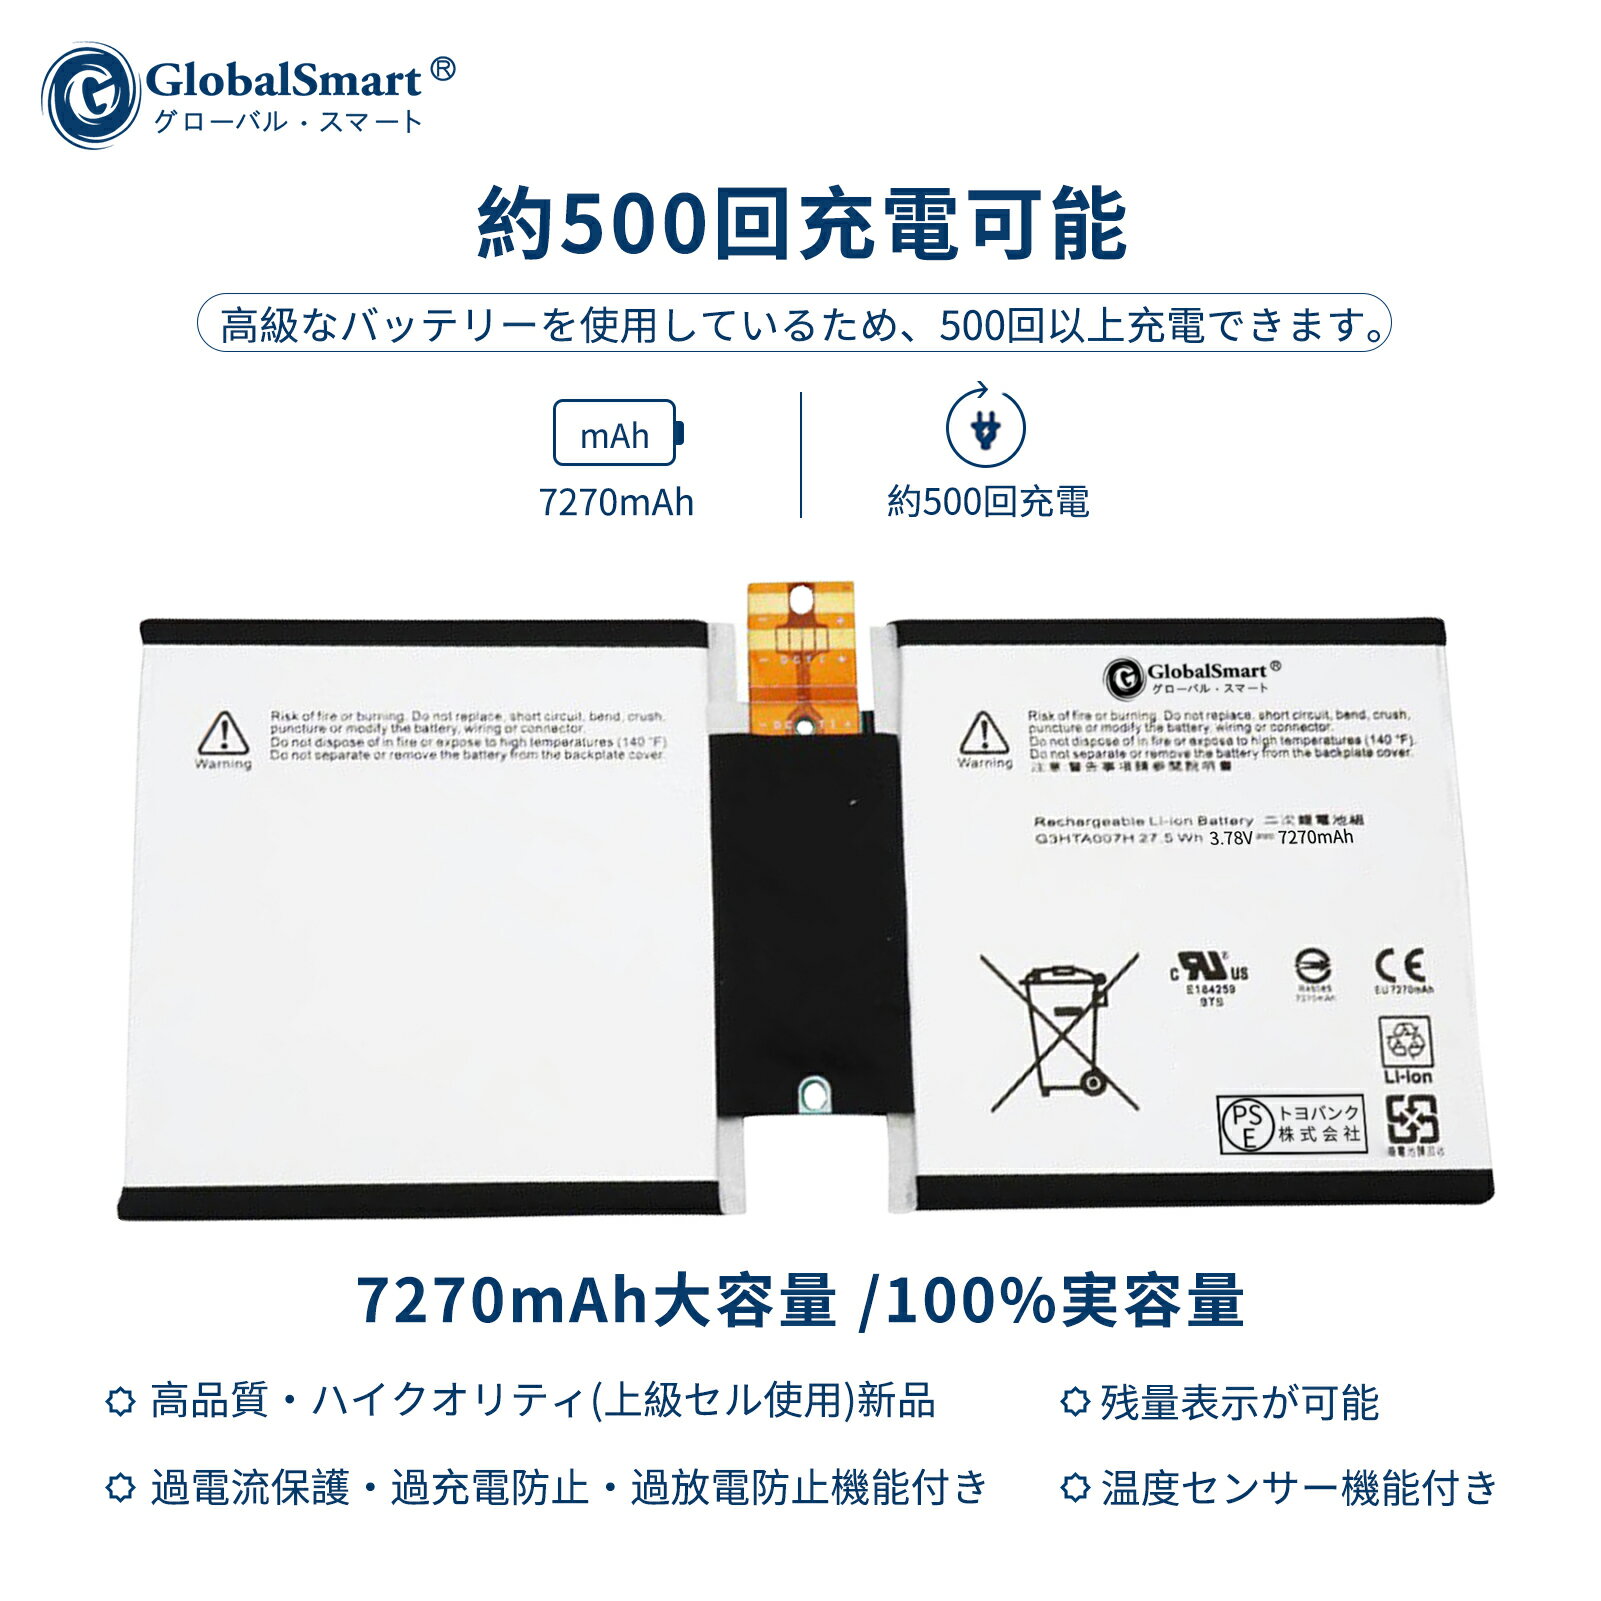 Globalsmart 新品 Surface G3HTA007H 互換バッテリー【7270mAh 3.78V】対応用 1年保証 高性能 PSE認証 互換バッテリパック XDY 2